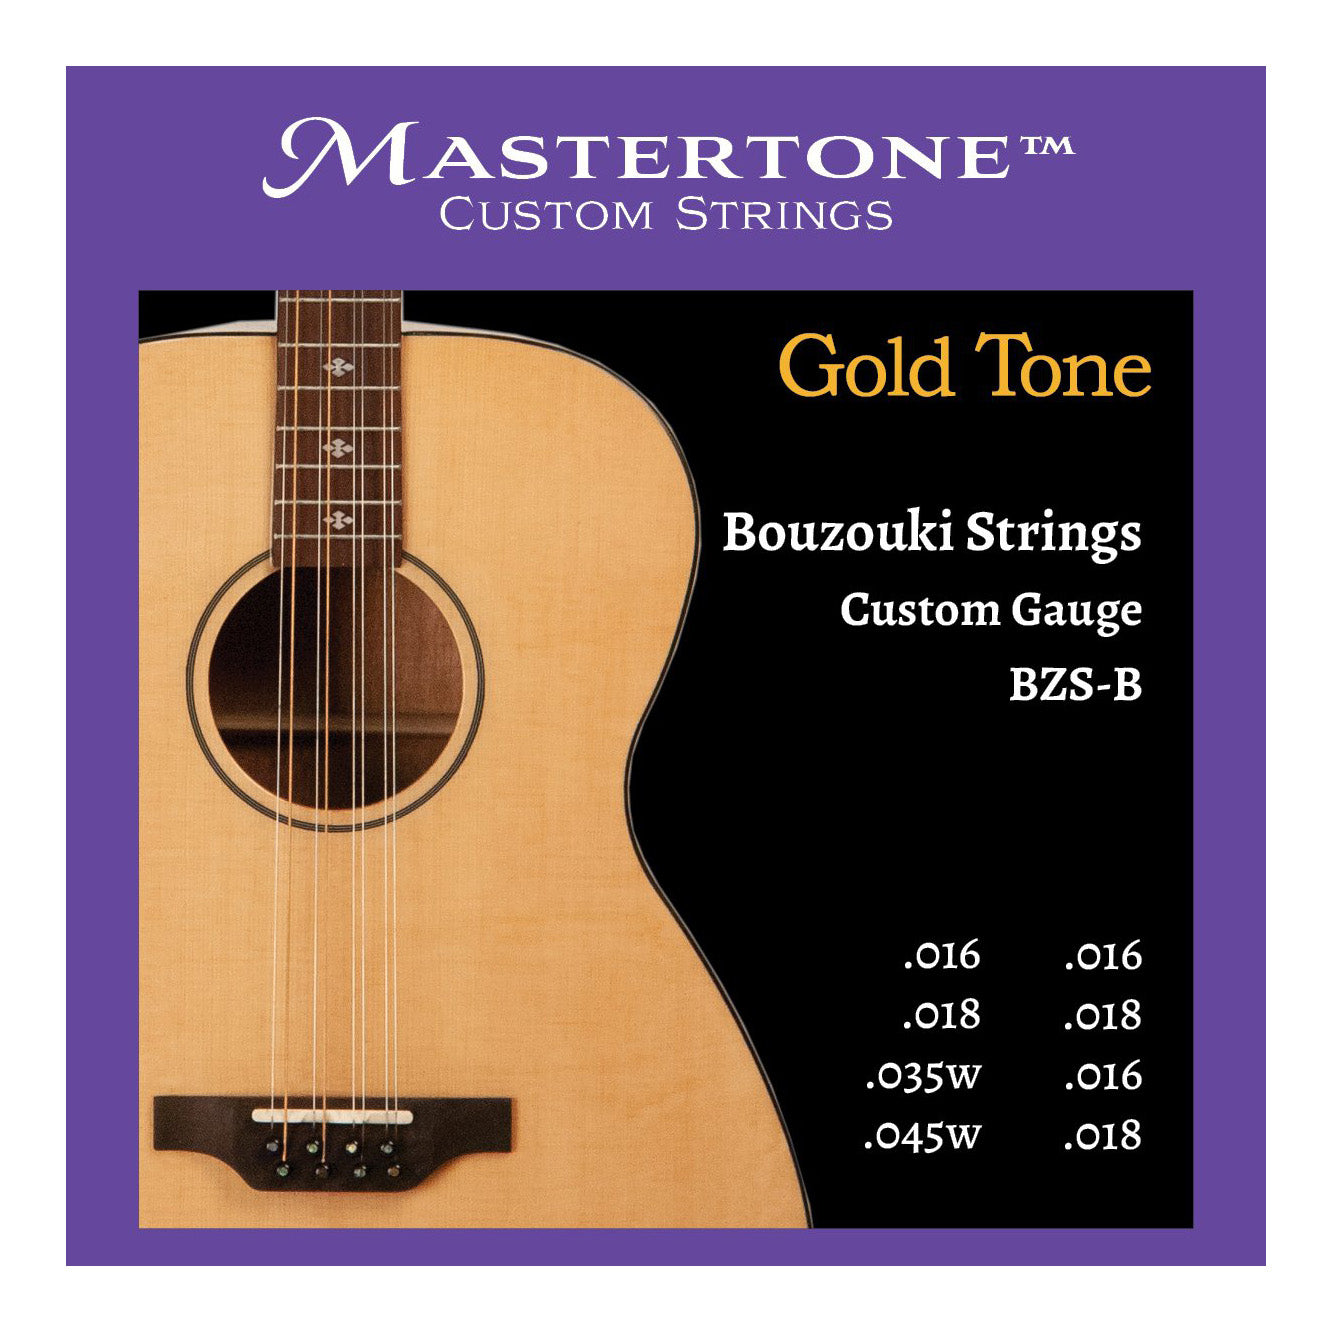 Gold Tone Bouzouki Strings - Ball End